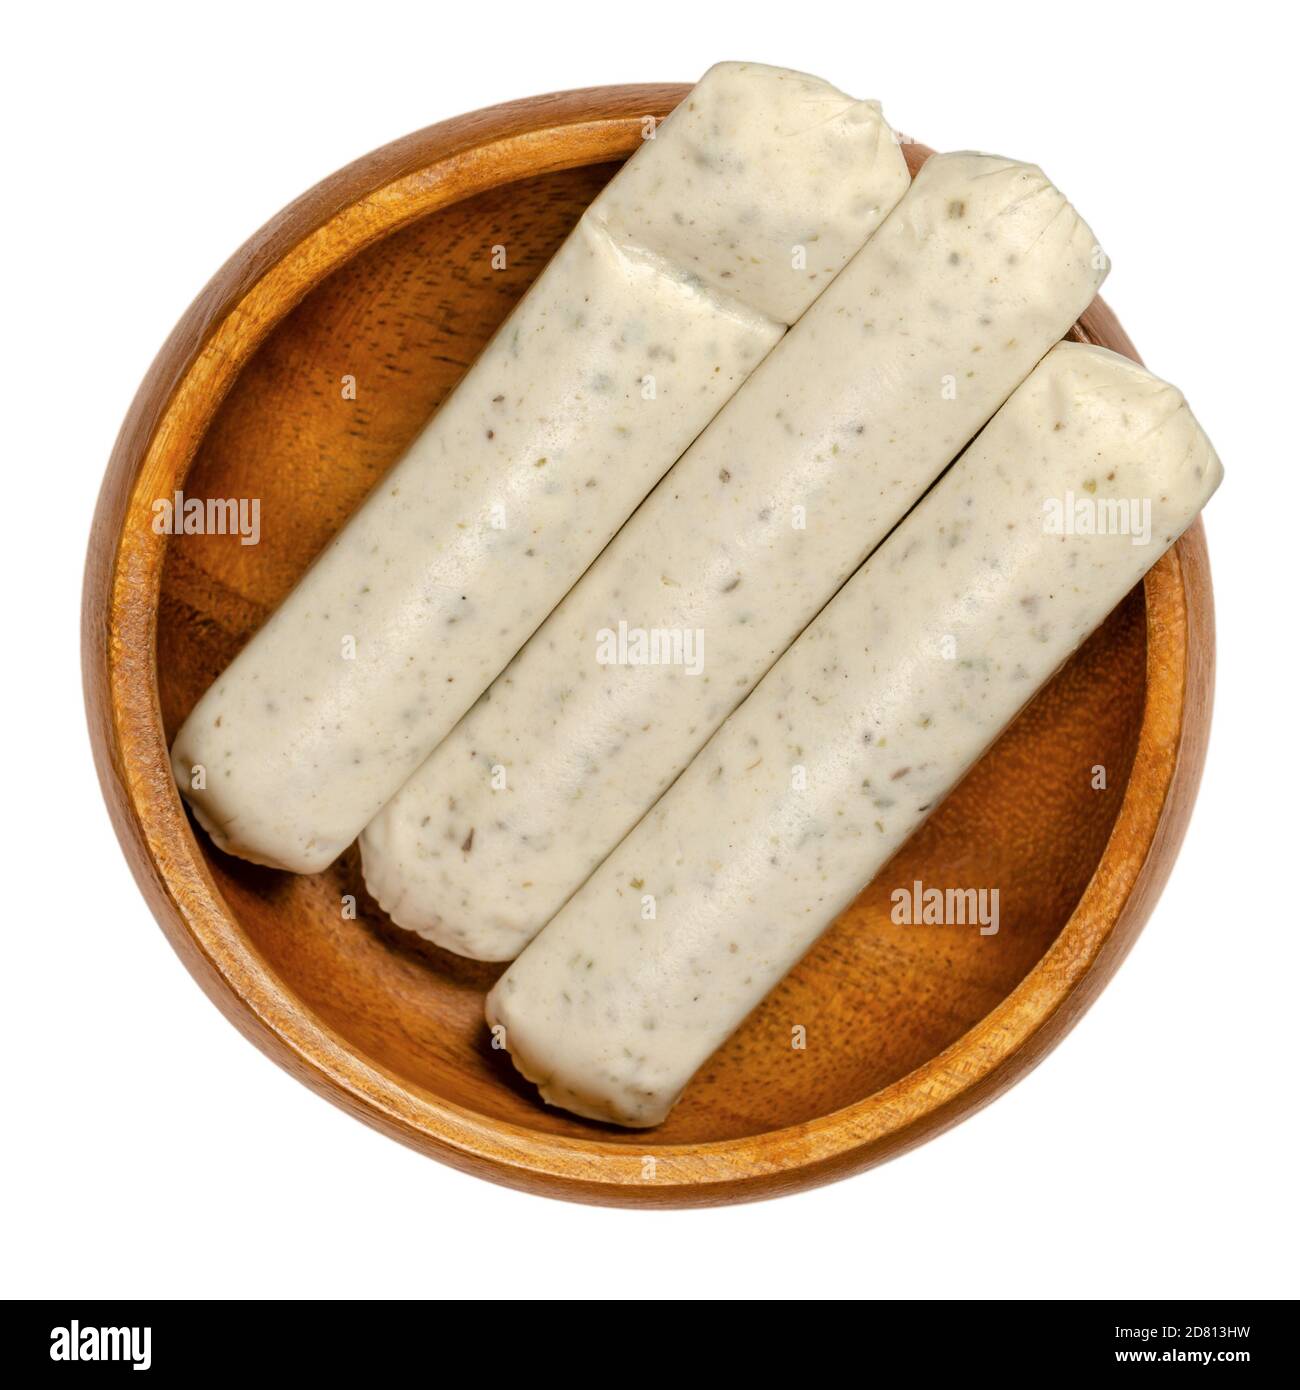 Vegetarische Grillwürste in einer Holzschüssel. Fleischlose Weißwürste aus Ei und Milcheiweiß als Fleischersatz, mit Kräutern und Gewürzen. Stockfoto